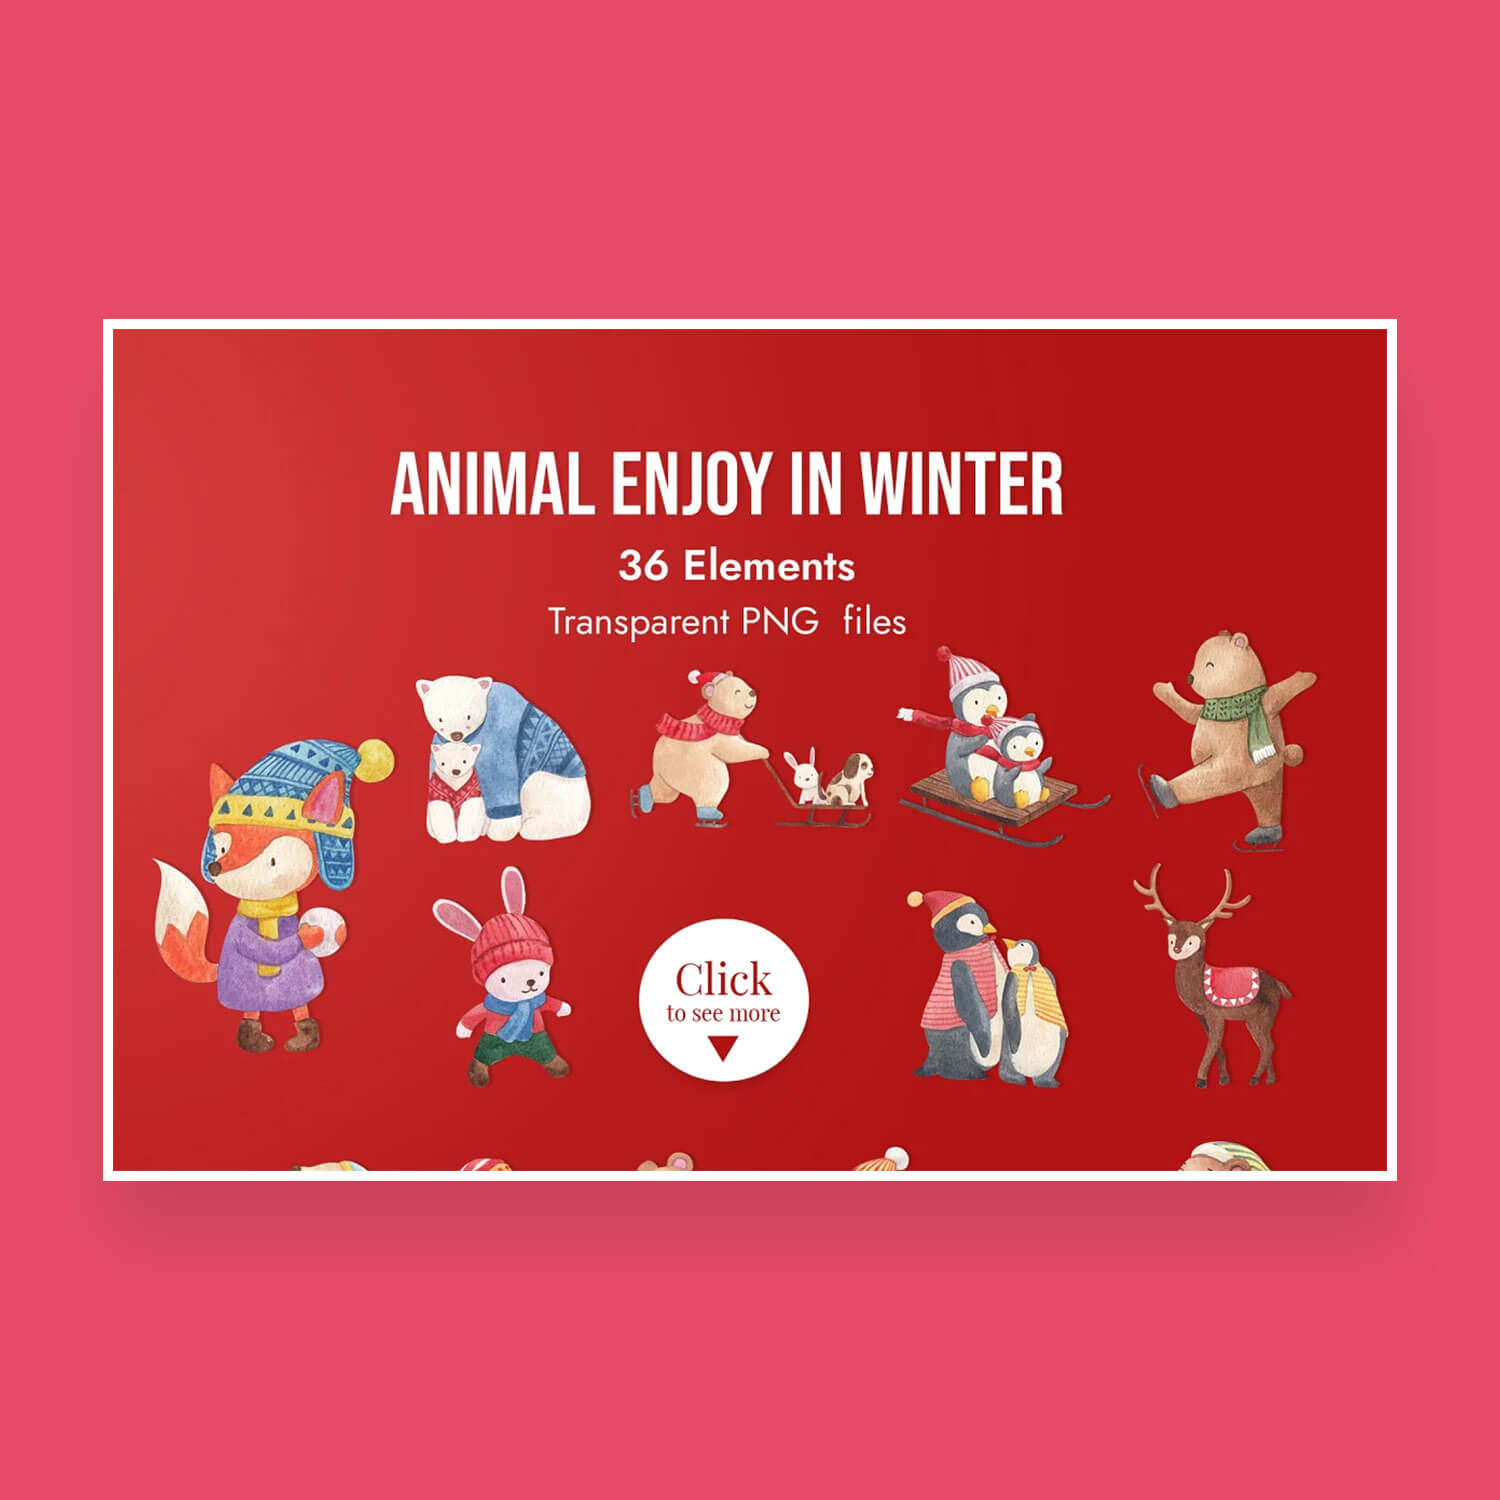 36 Elements Animals Enjoy in Winter.